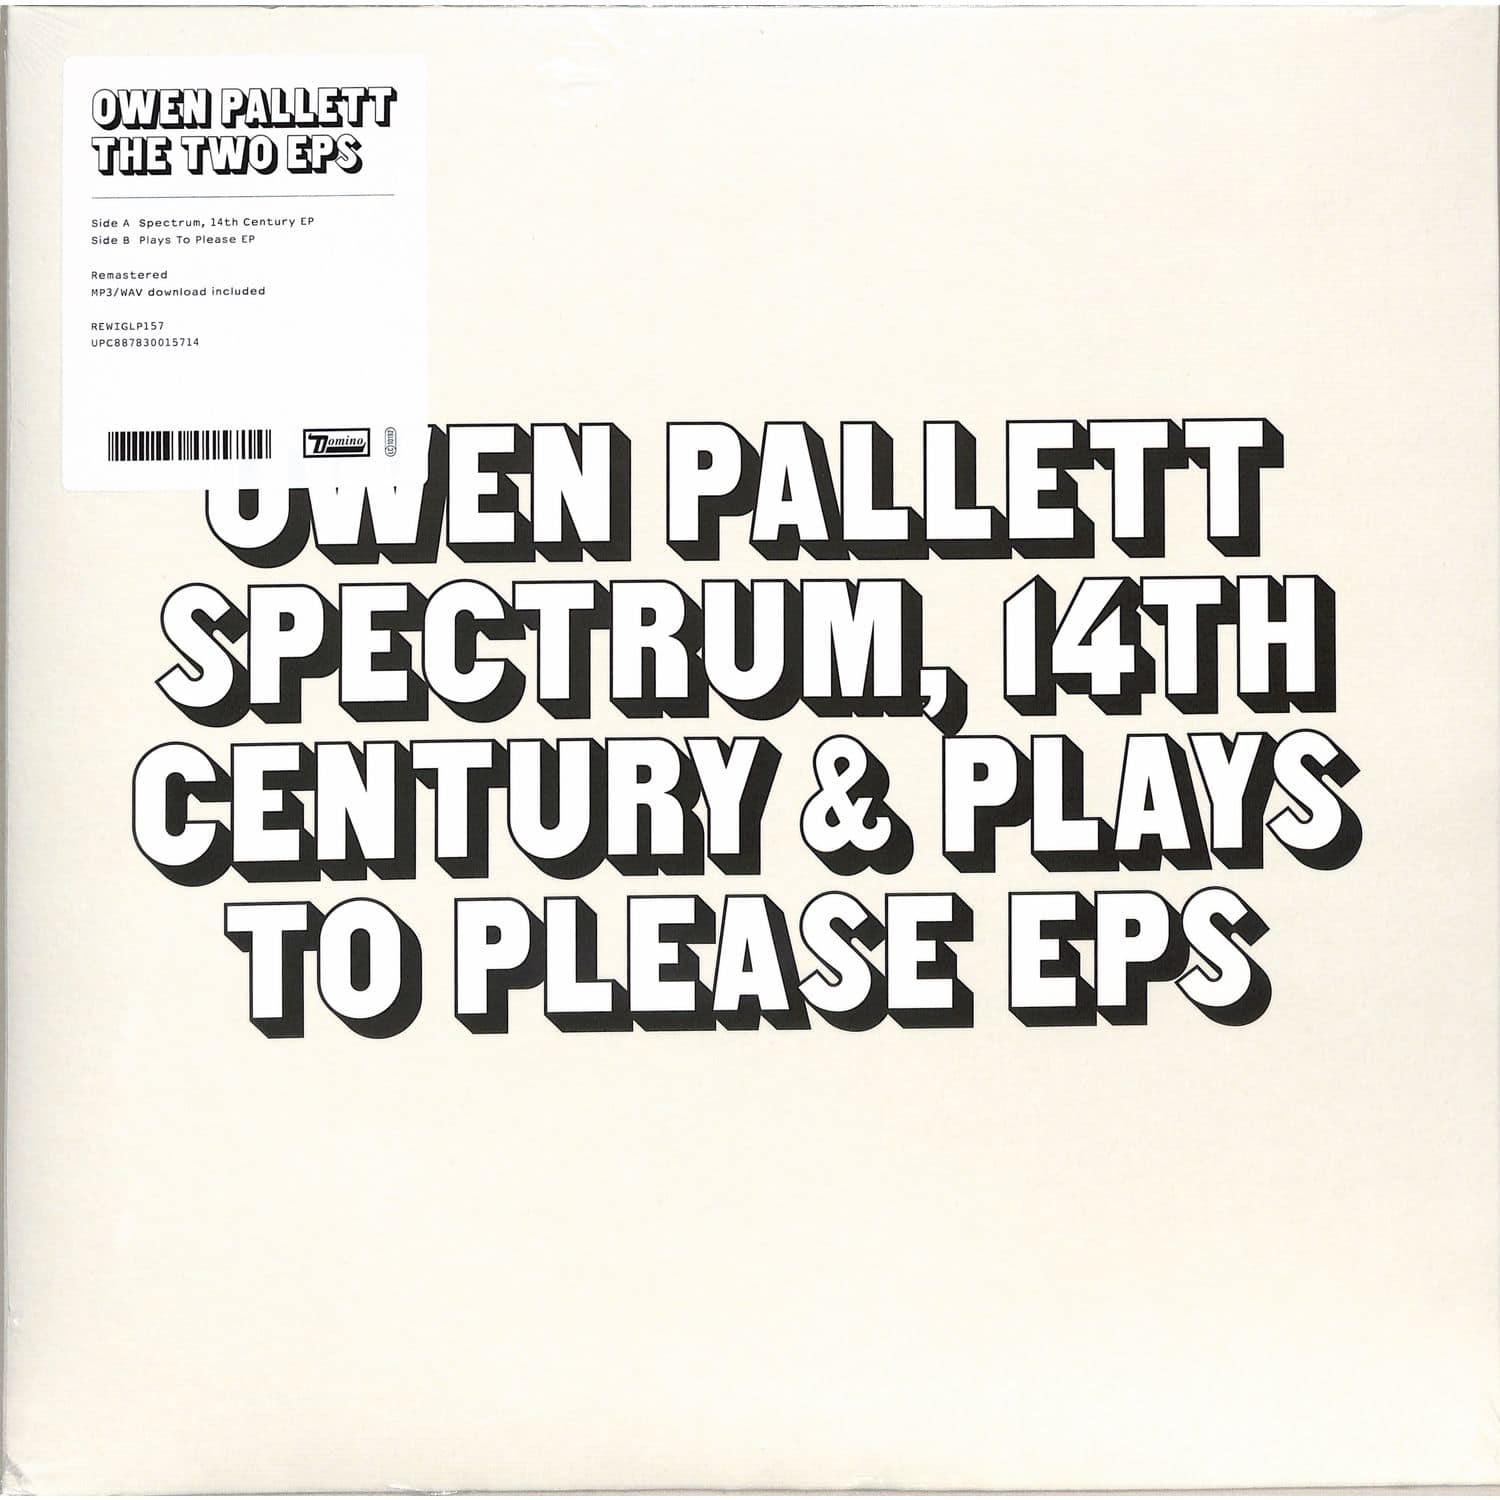  Owen Pallett - THE TWO EPS 